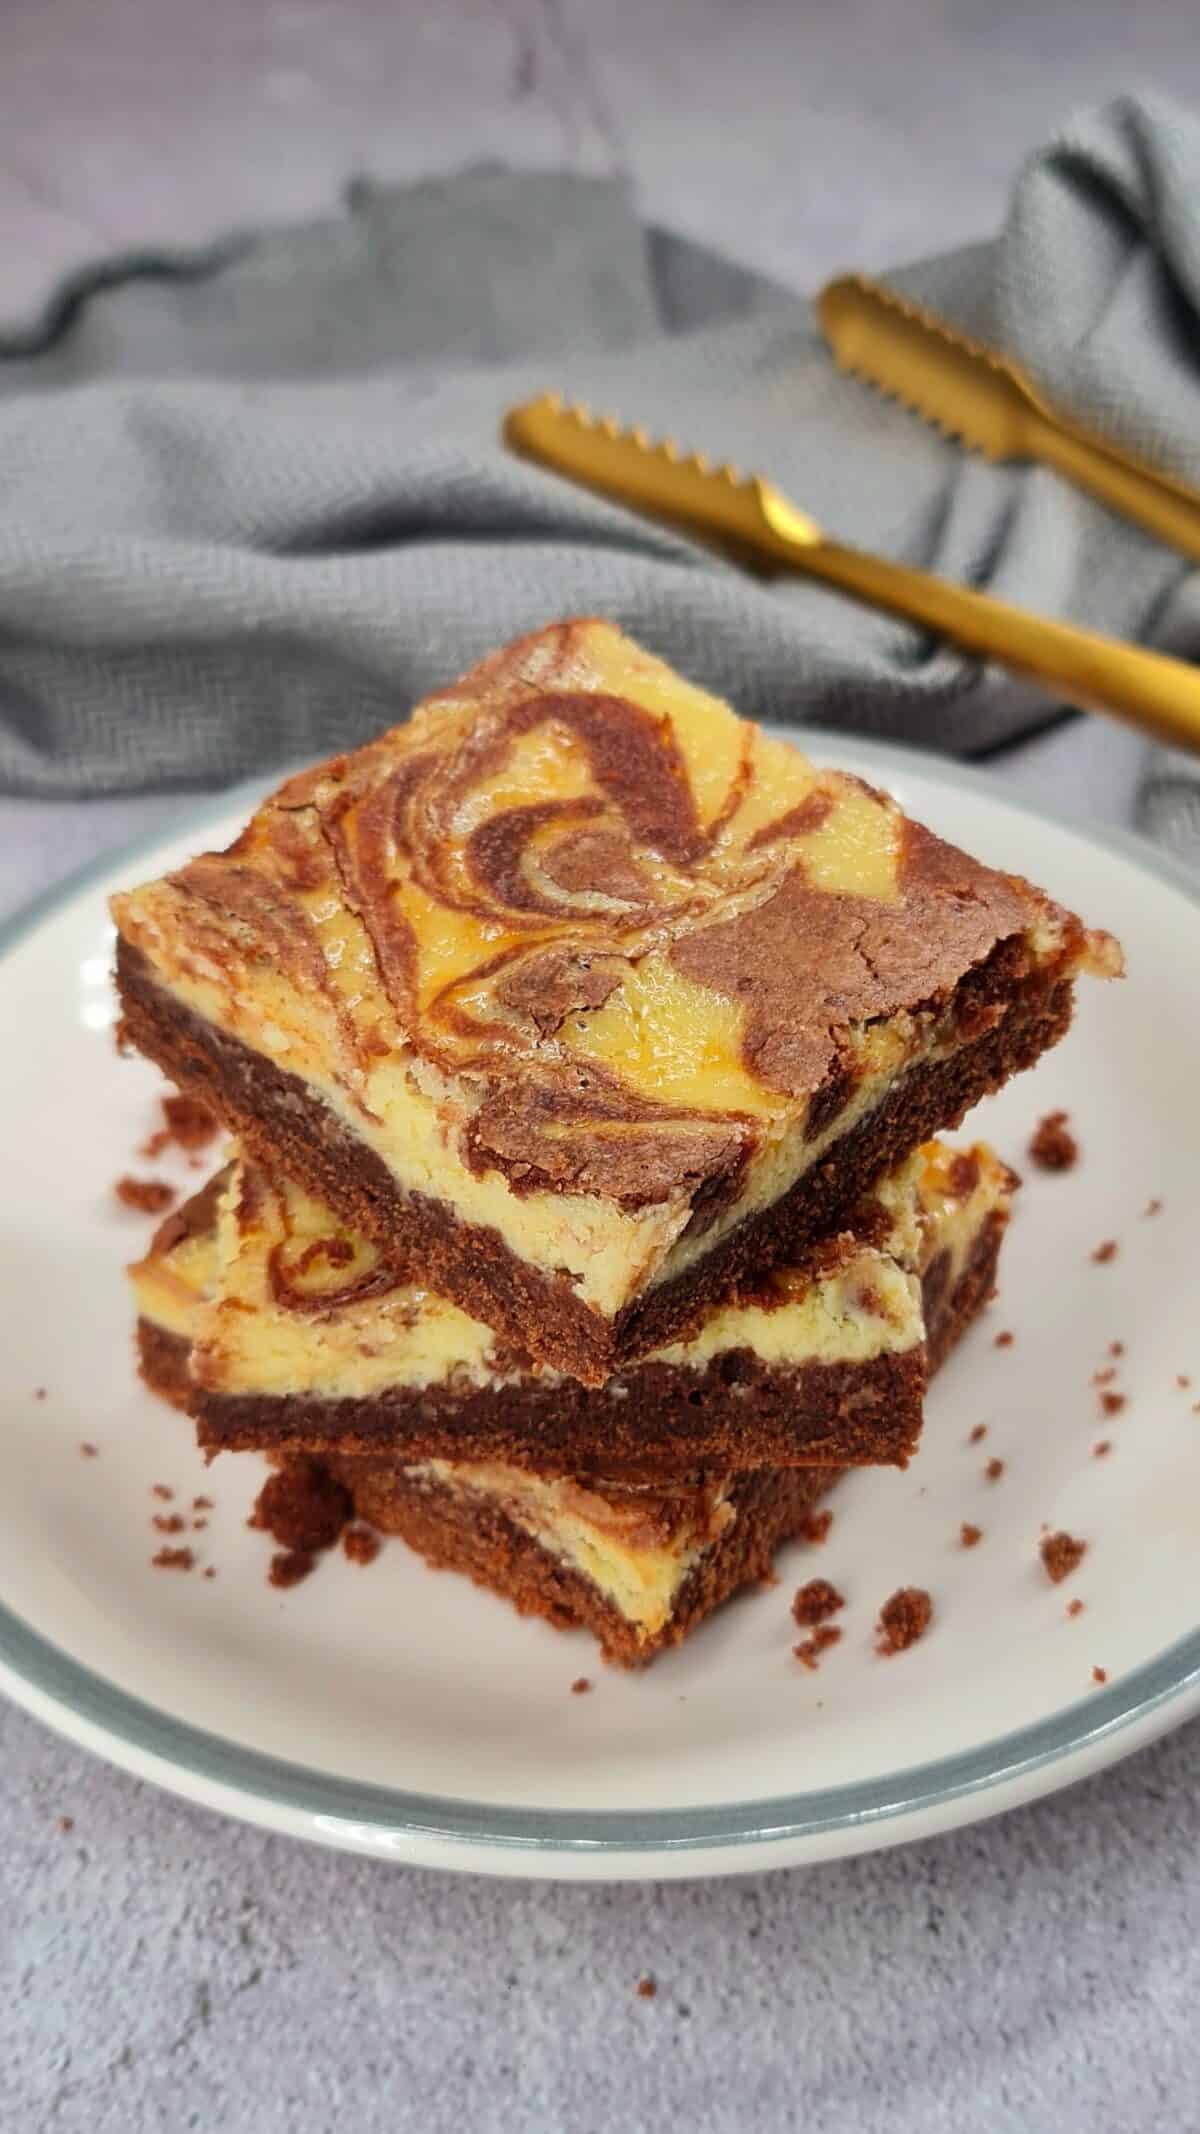 Brownie-Cheesecake, Kuchenstücke aufeinander gestapelt